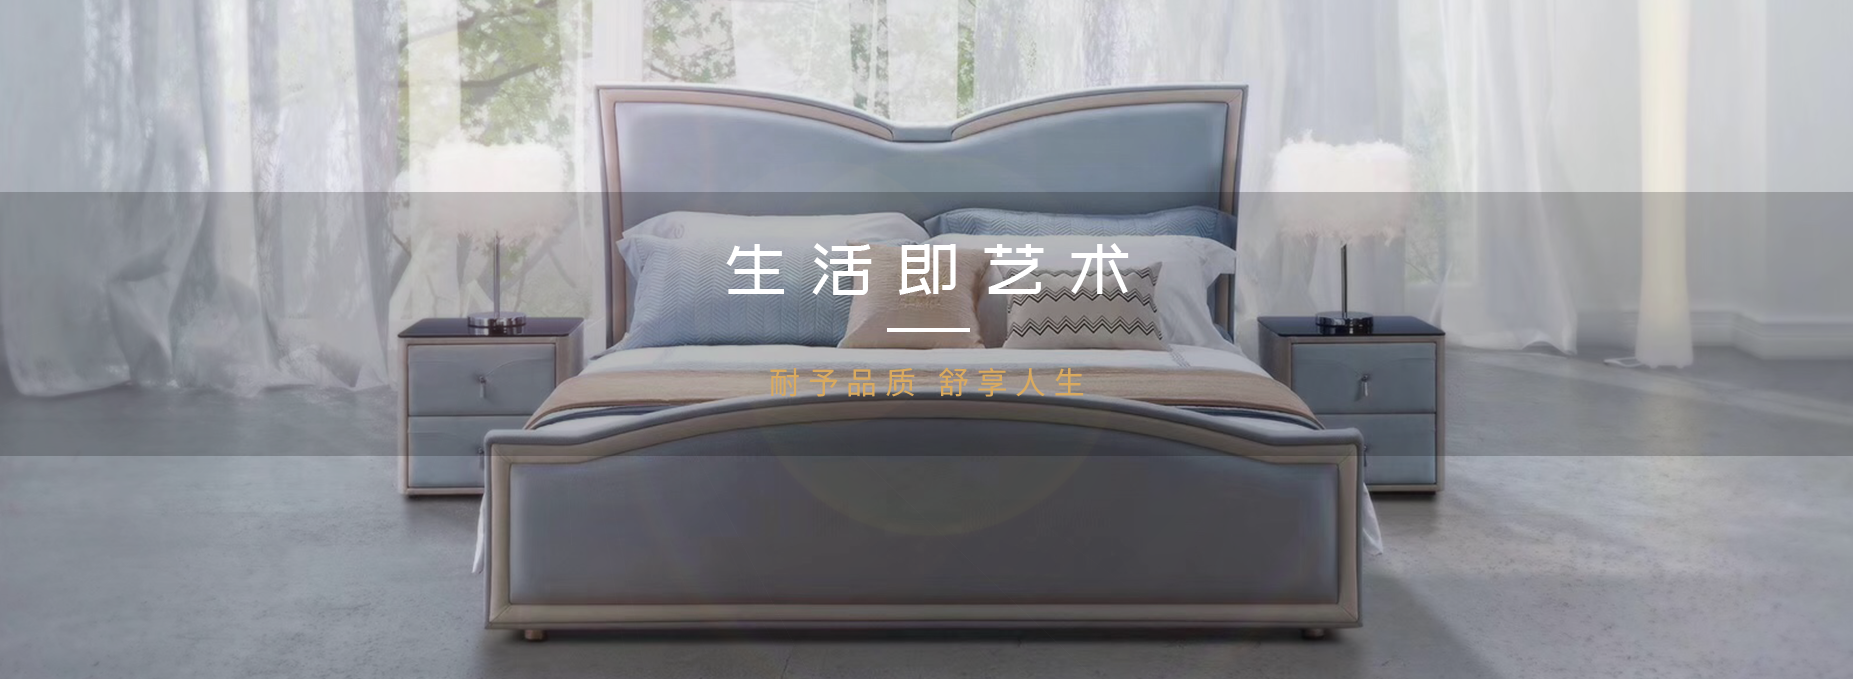 床垫什么品牌好,沙发什么品牌好,家具哪个品牌好,沙发厂家,整木家装